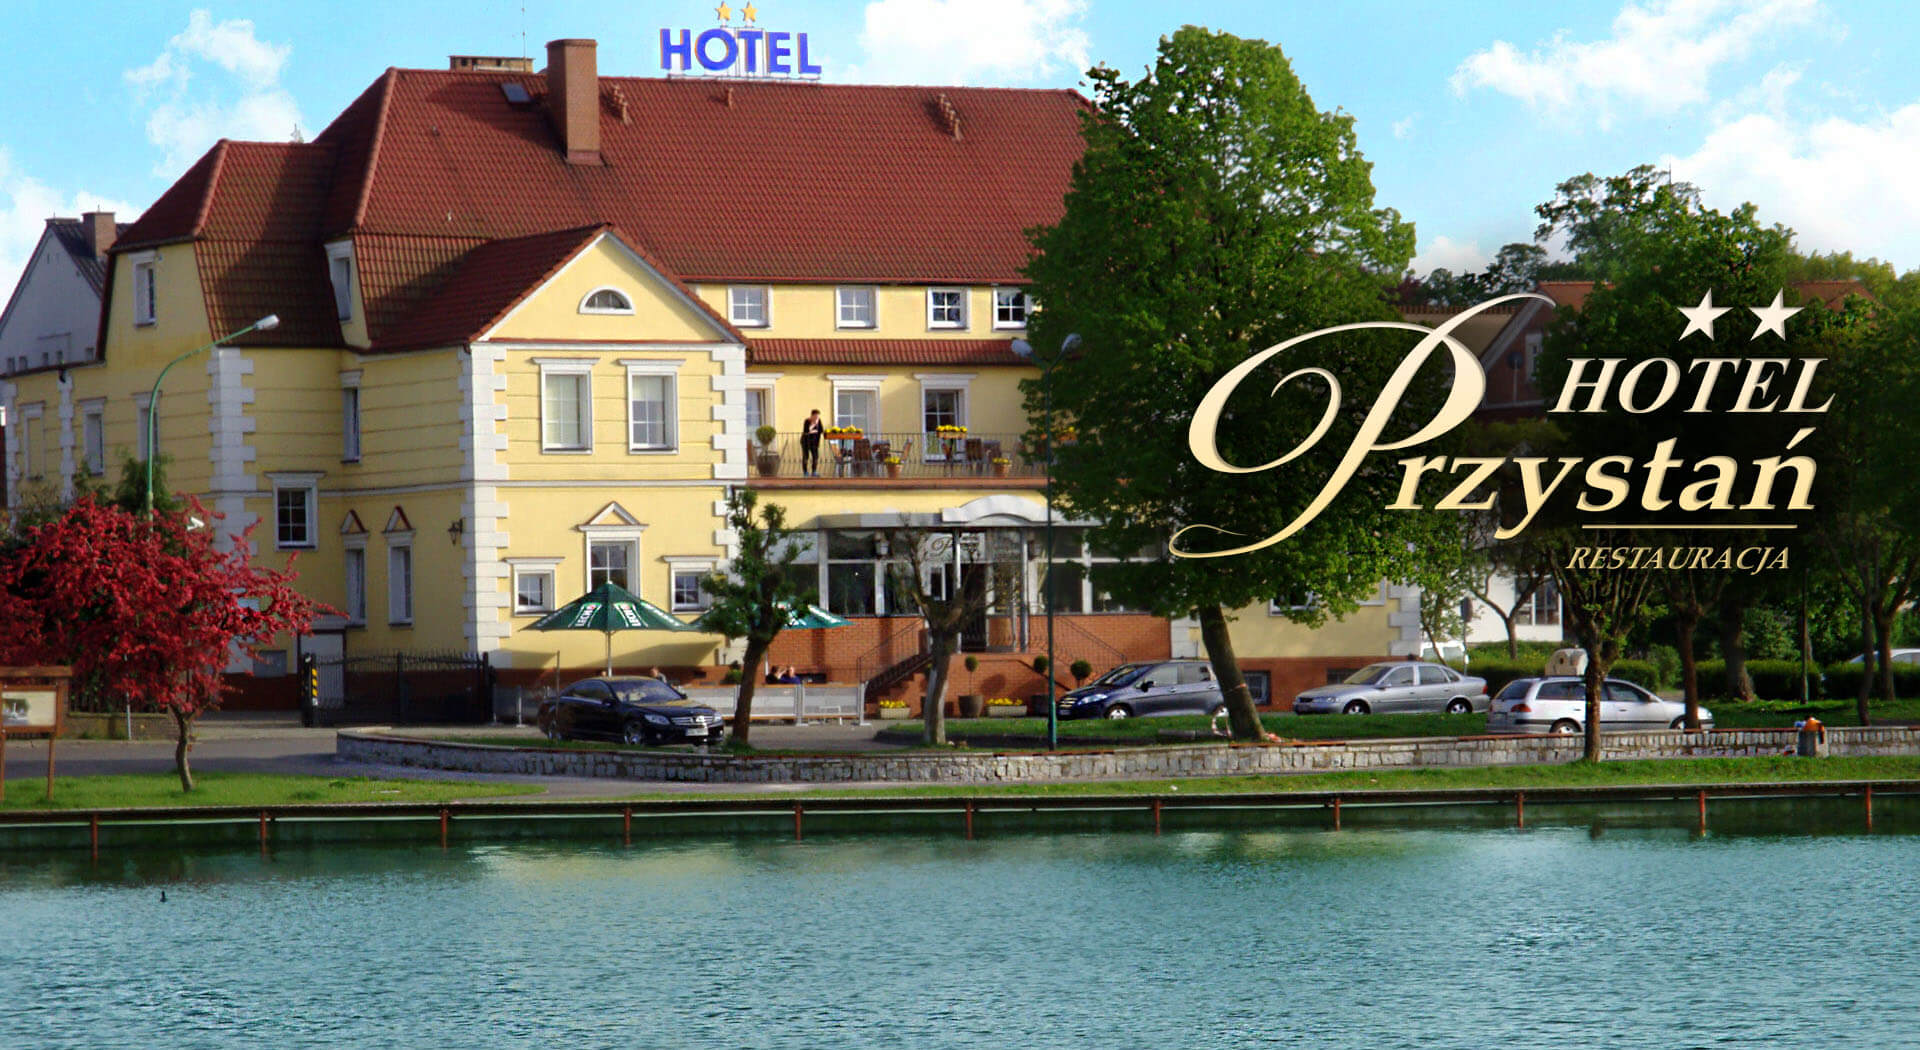 Restauracja Przystań, noclegi, hotel, motel, restauracja, obiady, bankiety, imprezy, komunie, dyskoteka, Nowogard